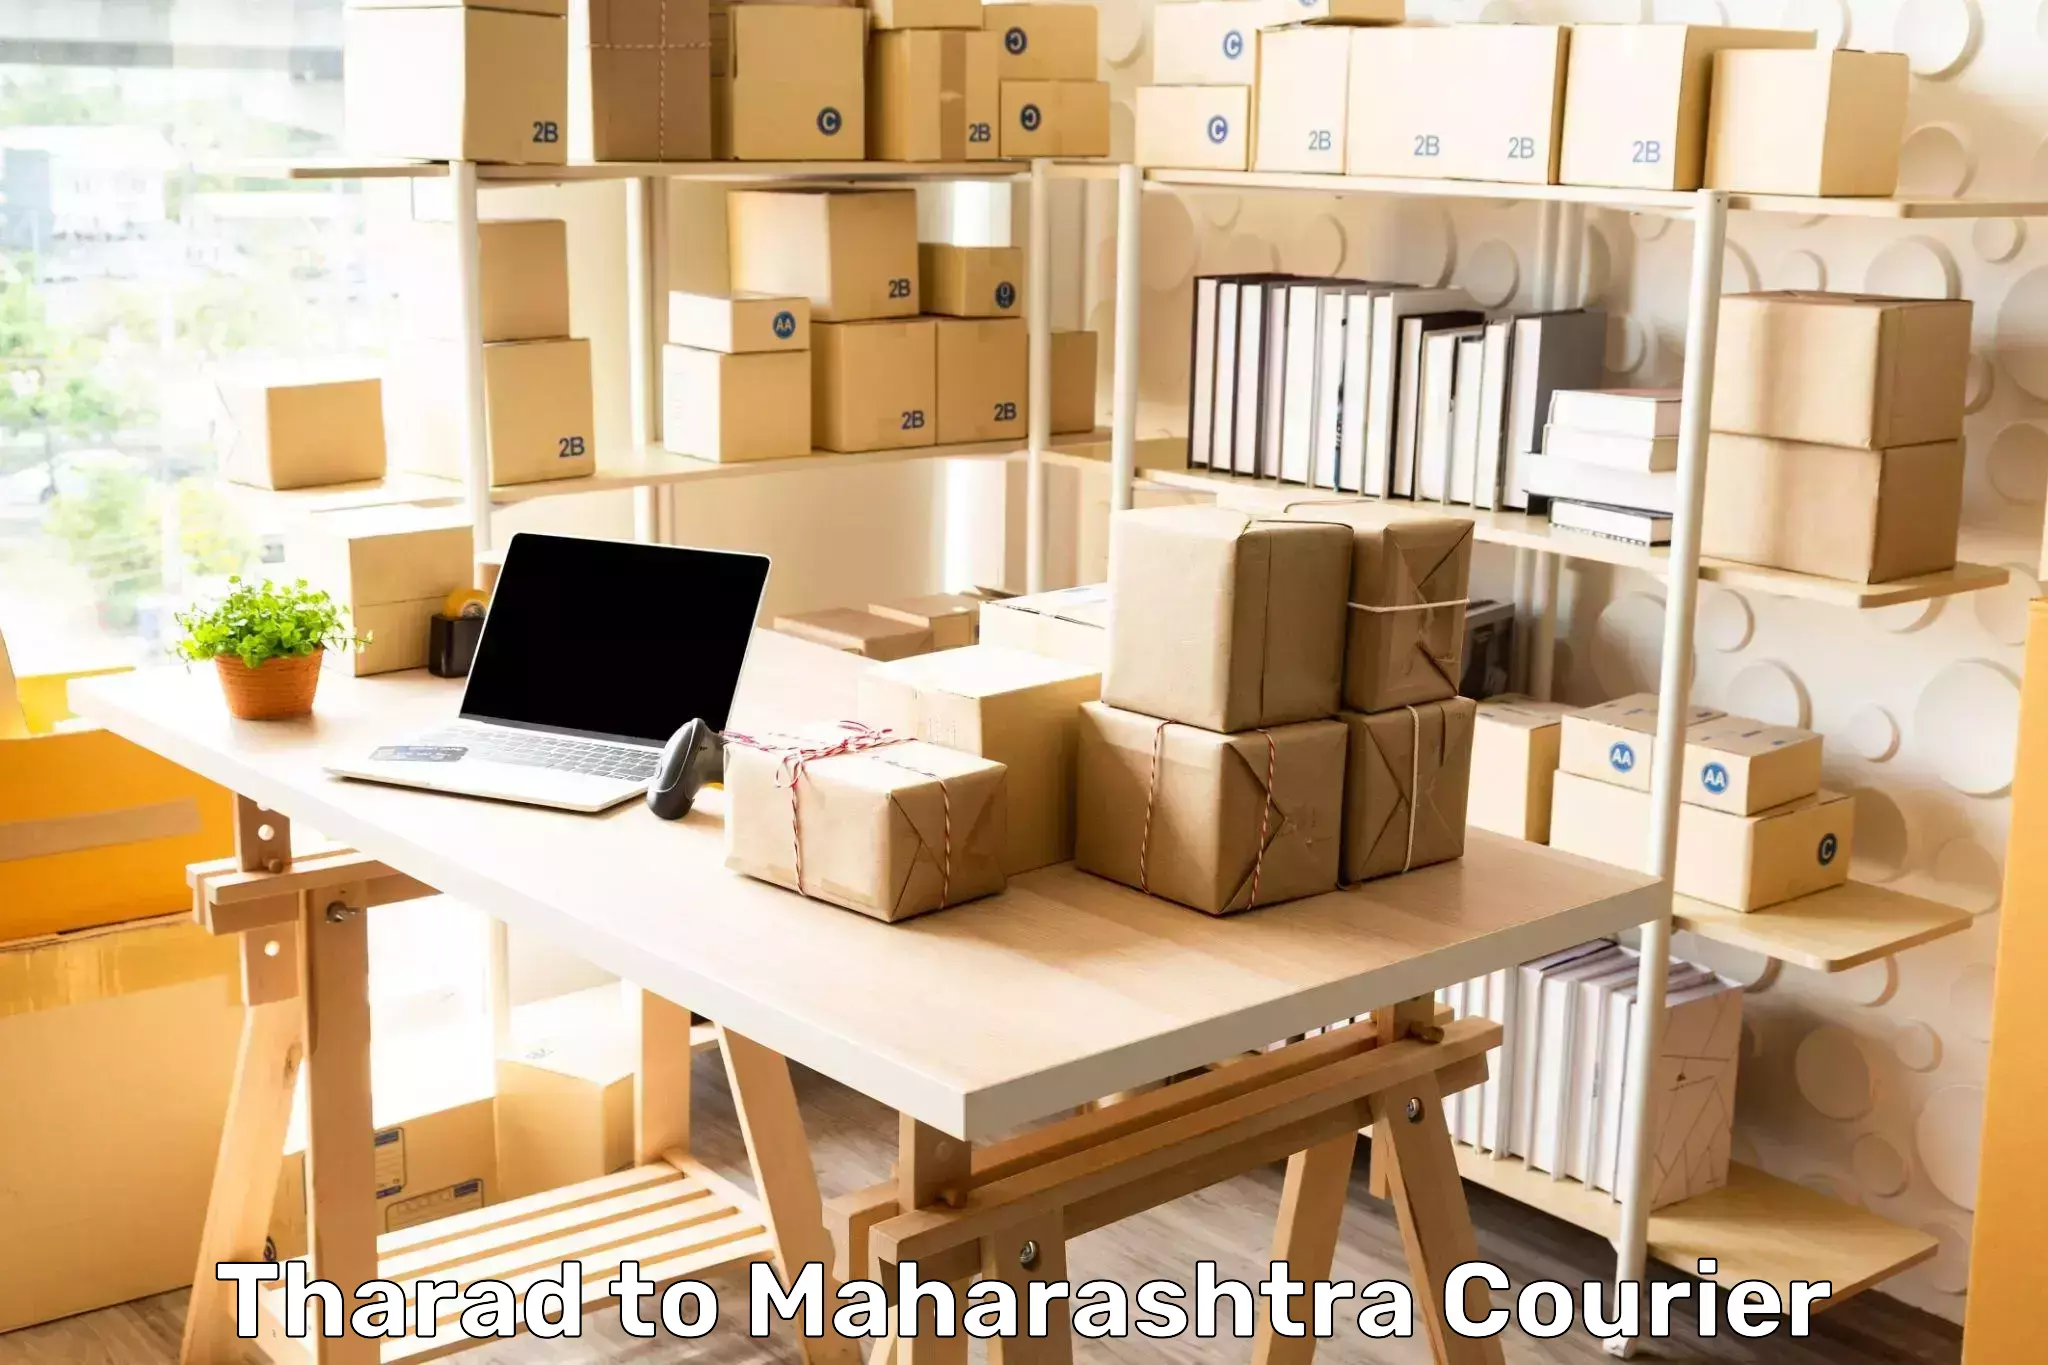 Logistics service provider Tharad to Maharashtra